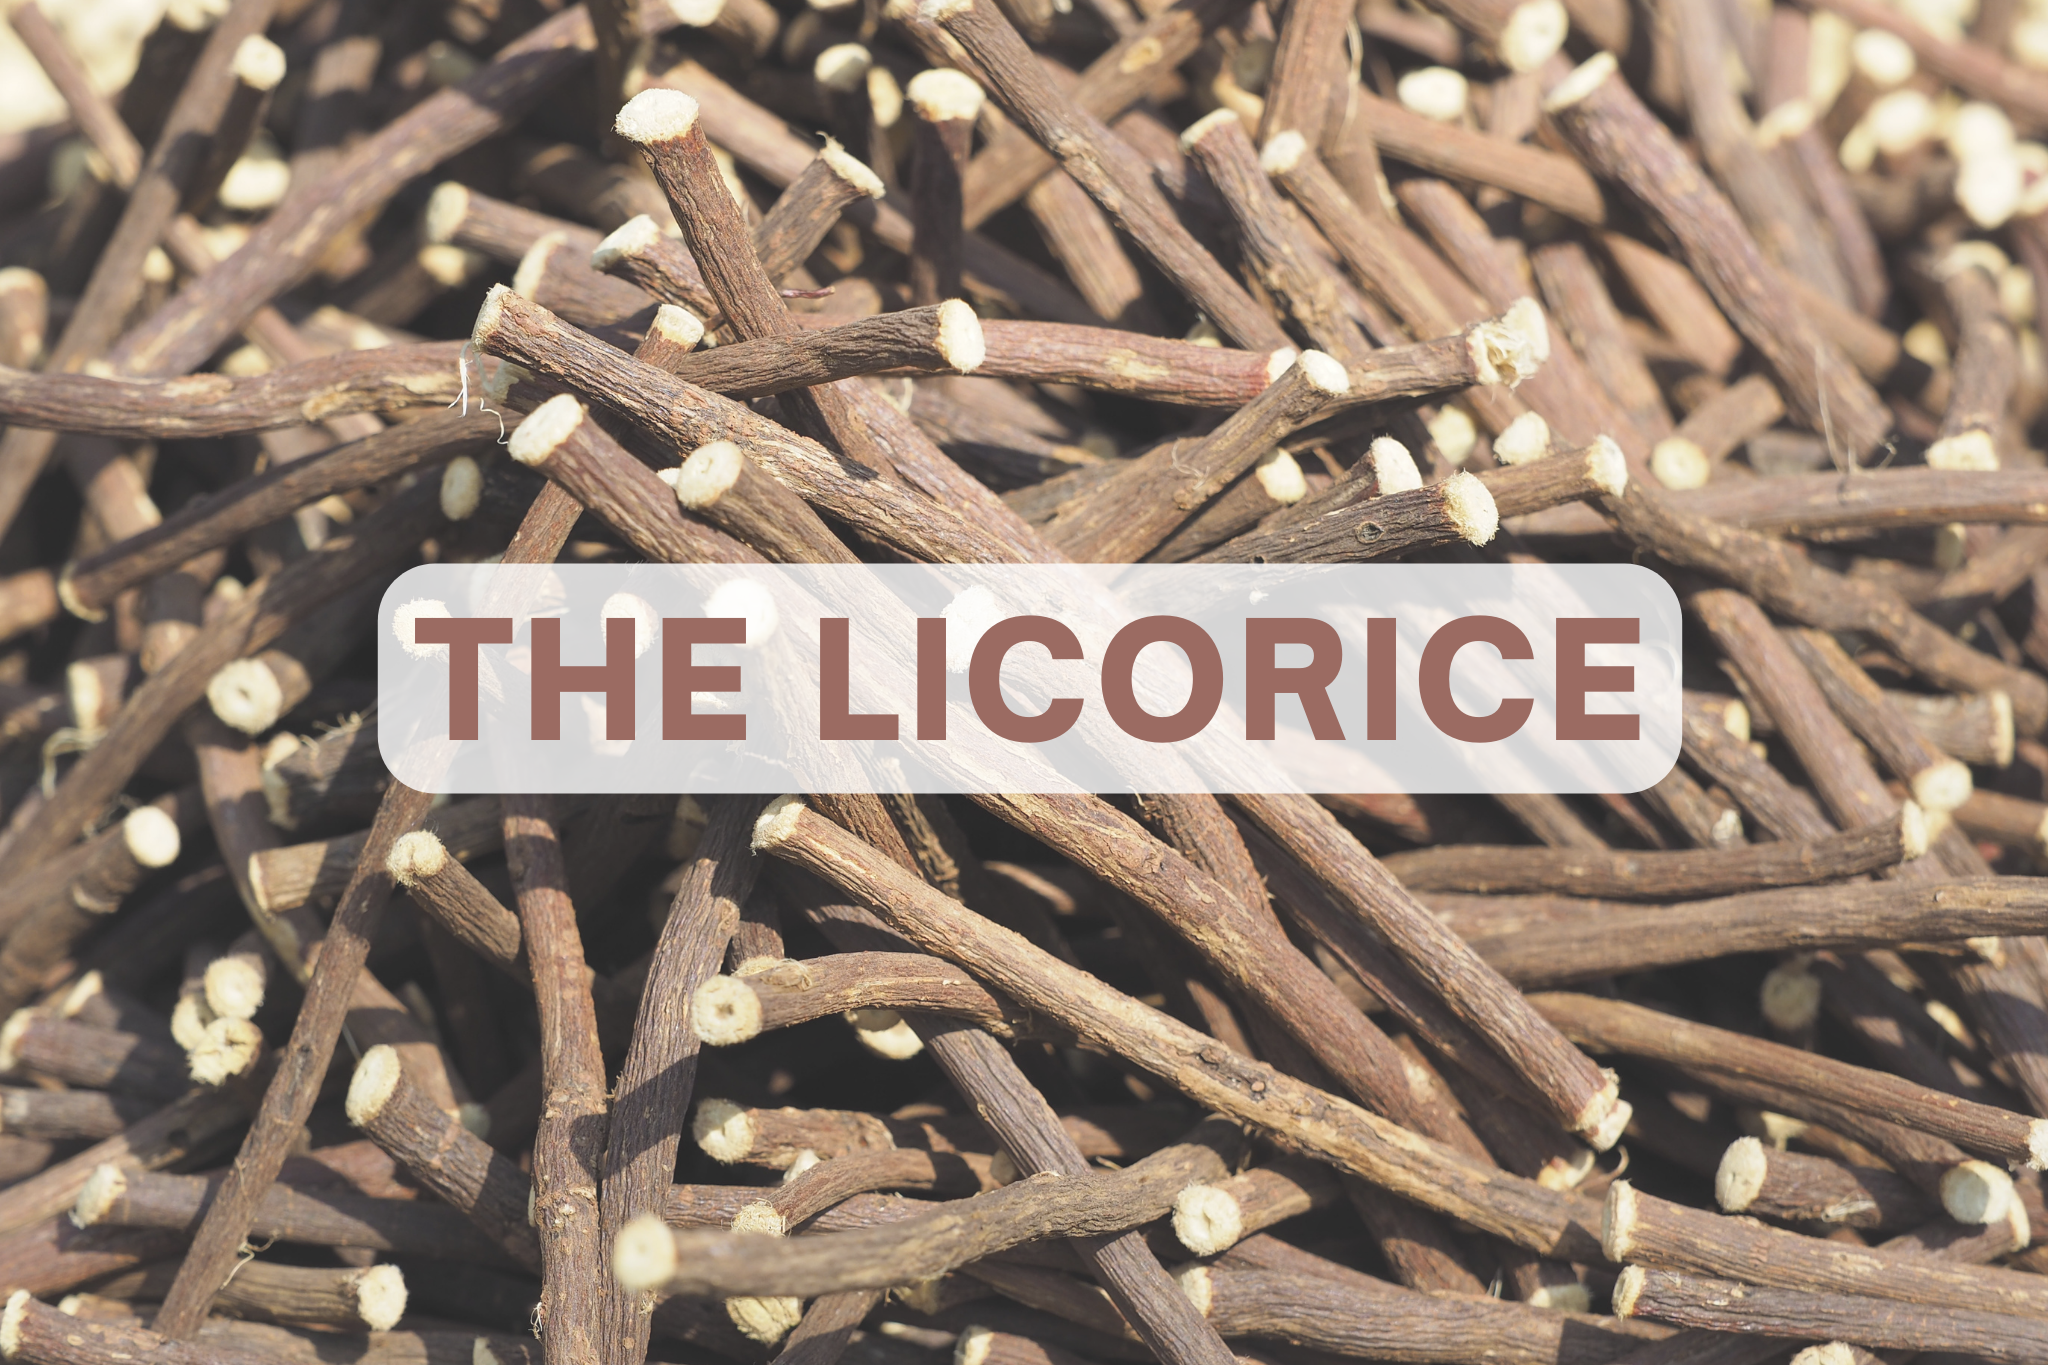 The licorice